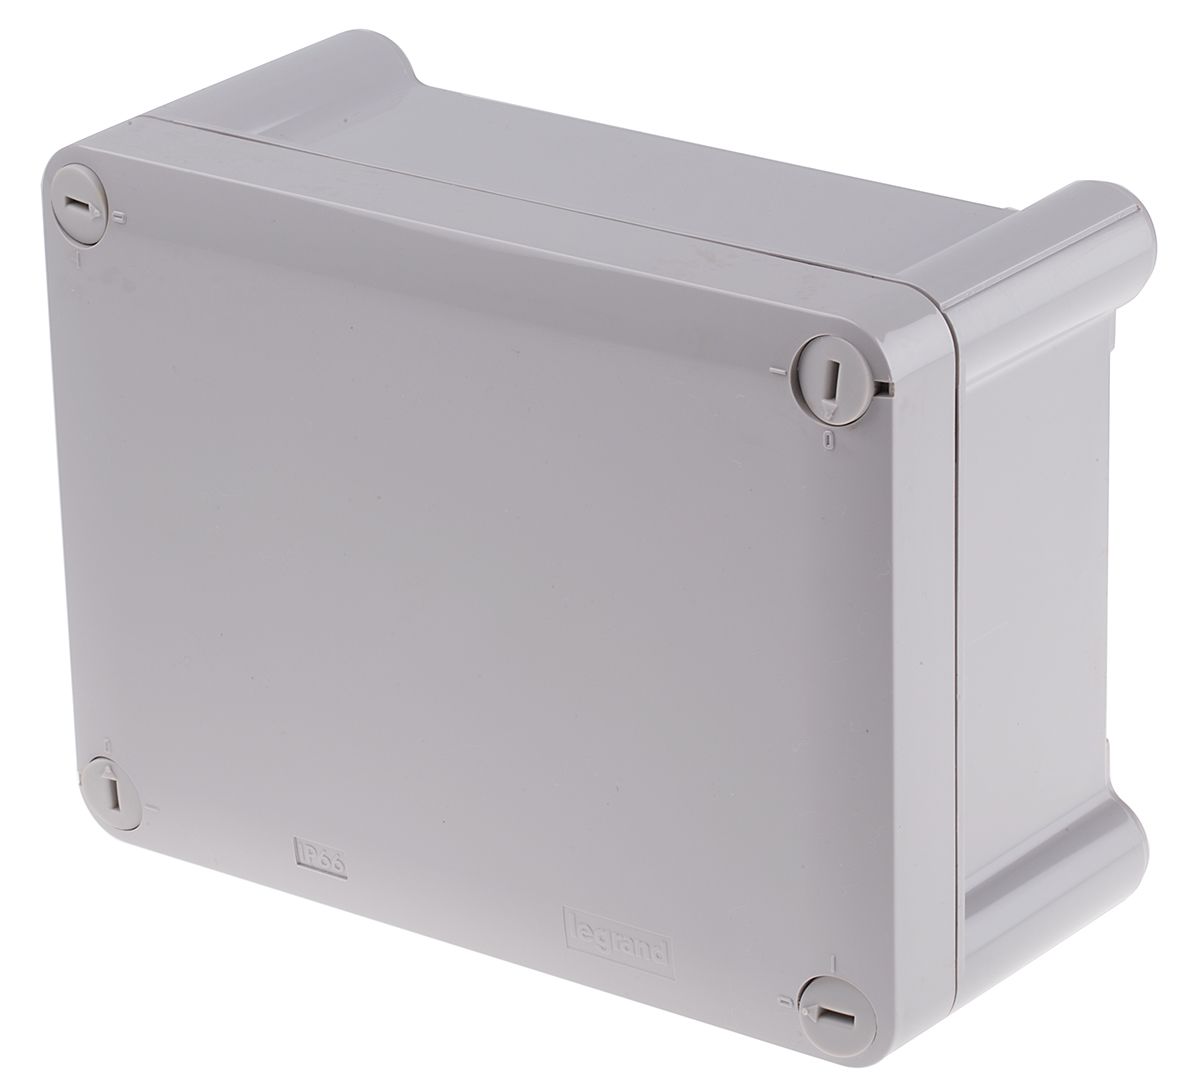 Legrand Atlantic Series Polycarbonate Wall Box, IP66, 175 mm x 130 mm x 81mm